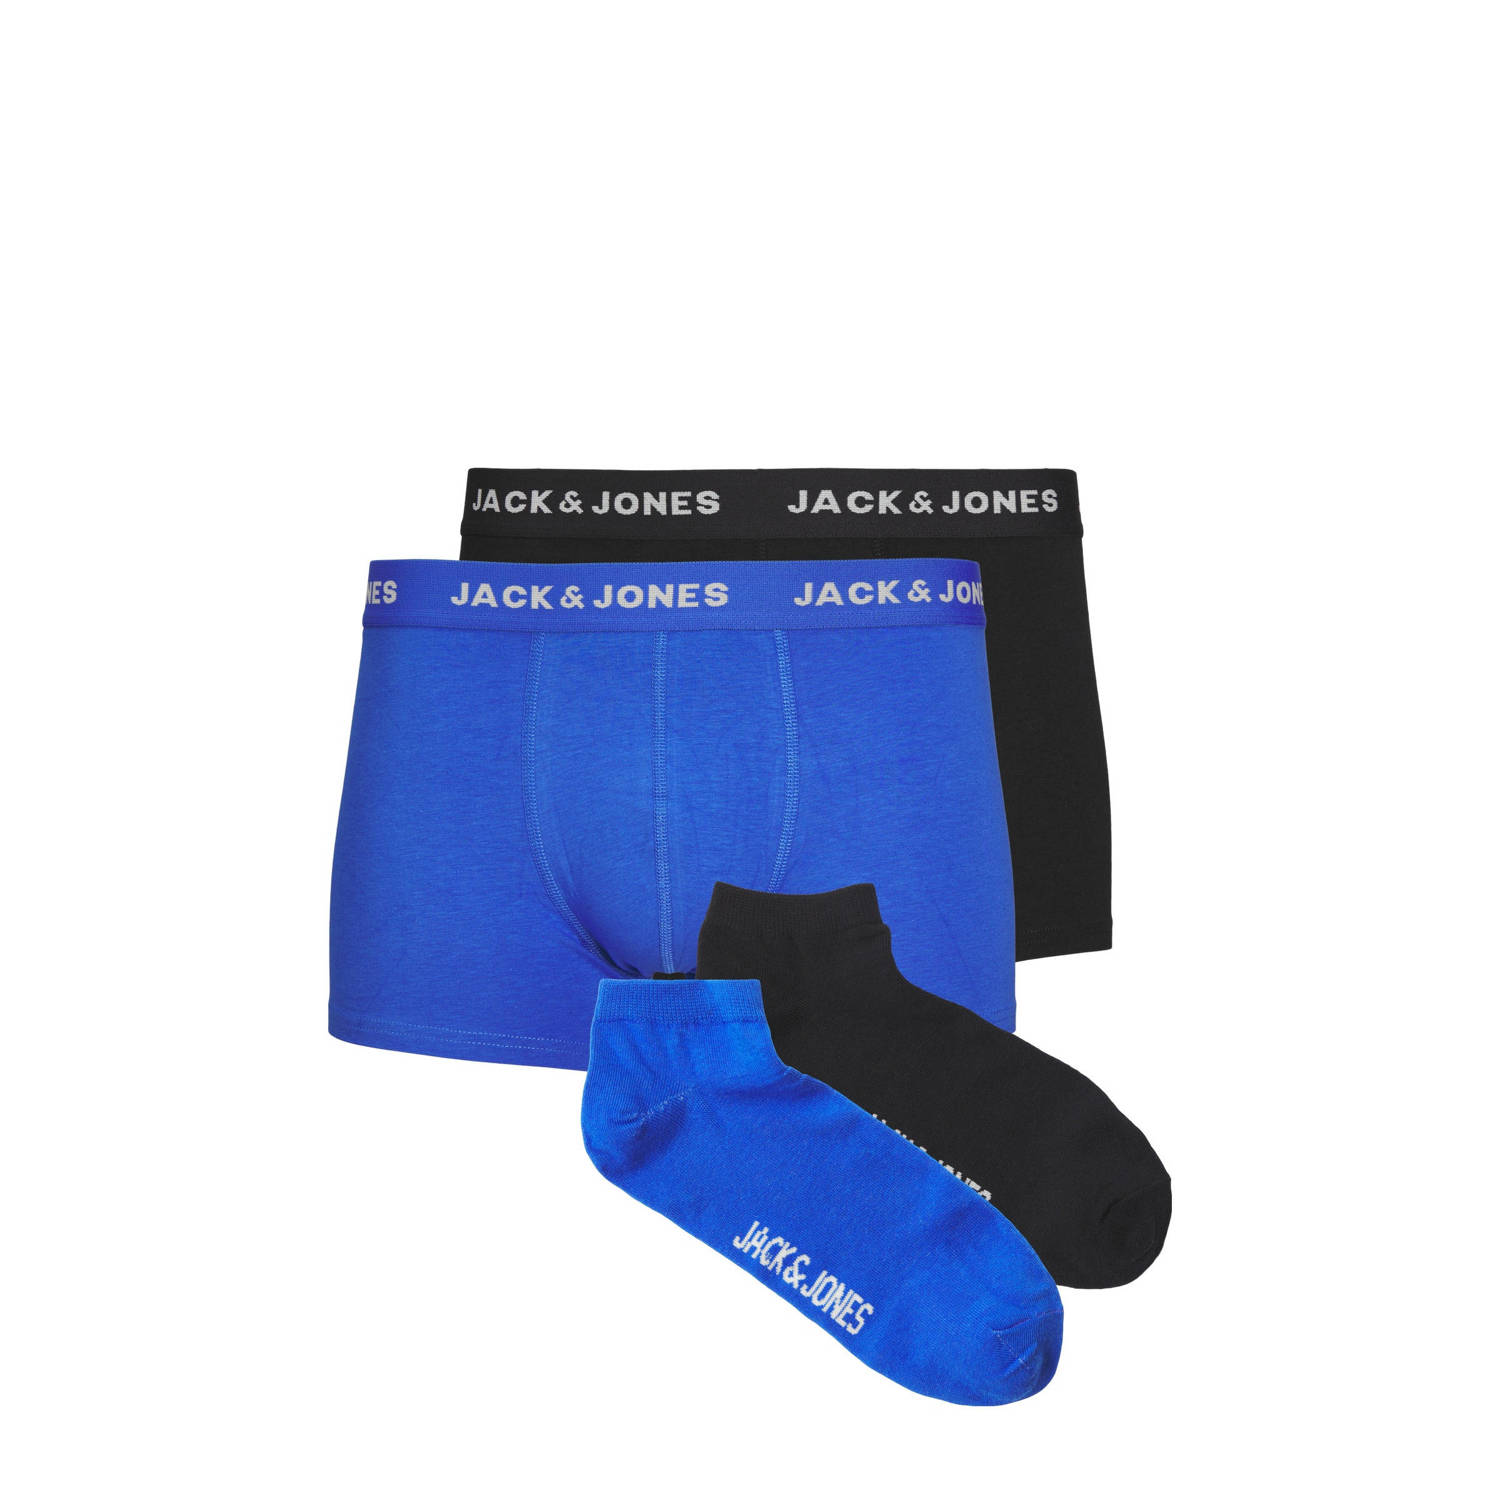 JACK & JONES weekendset 2 boxershorts + 2 paar sokken JACDAVID blauw zwart